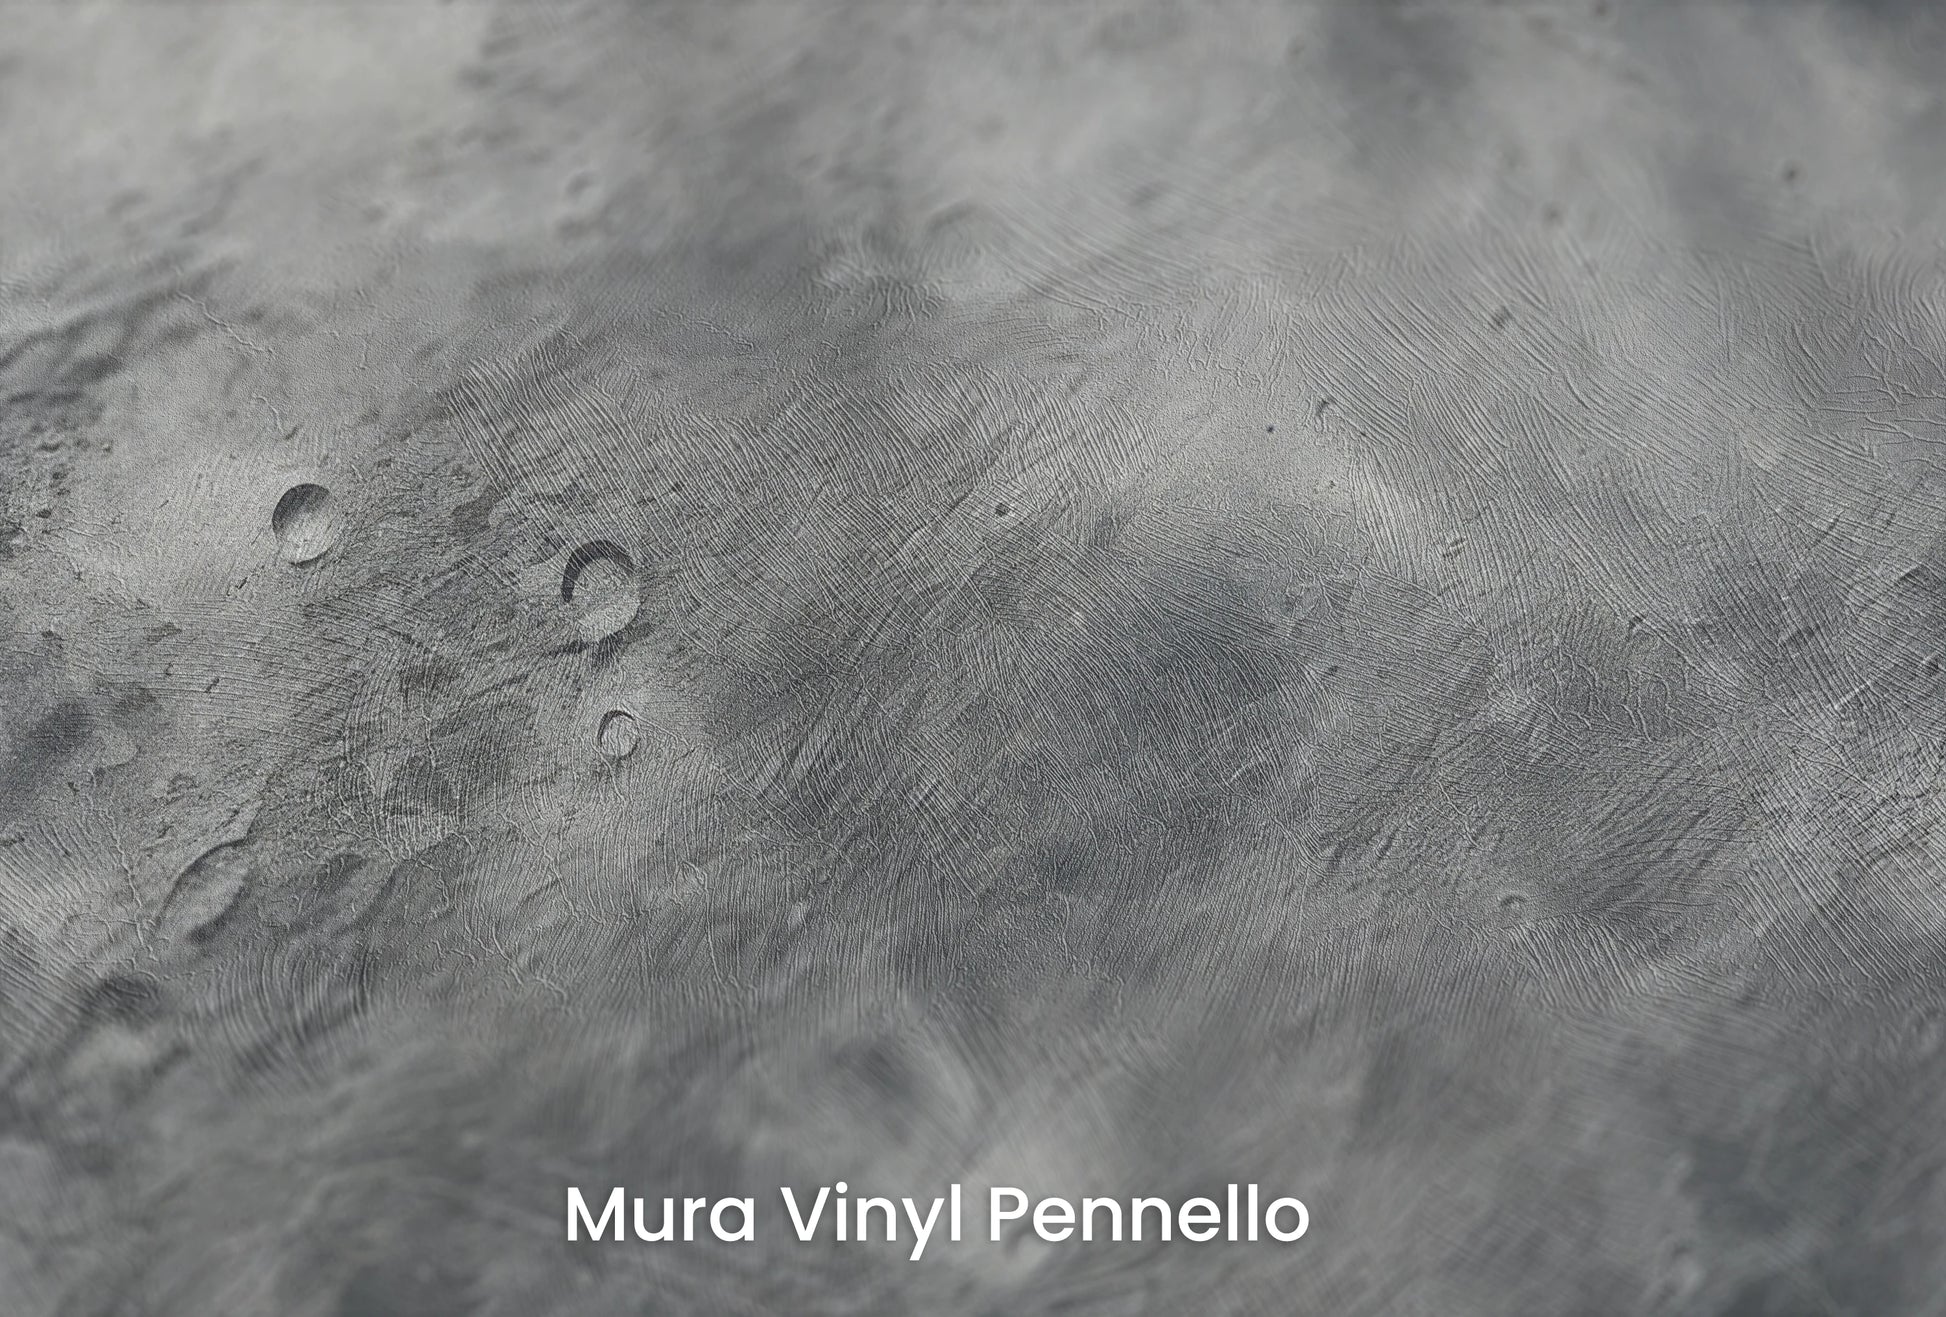 Zbliżenie na artystyczną fototapetę o nazwie Mercury's Crust na podłożu Mura Vinyl Pennello - faktura pociągnięć pędzla malarskiego.